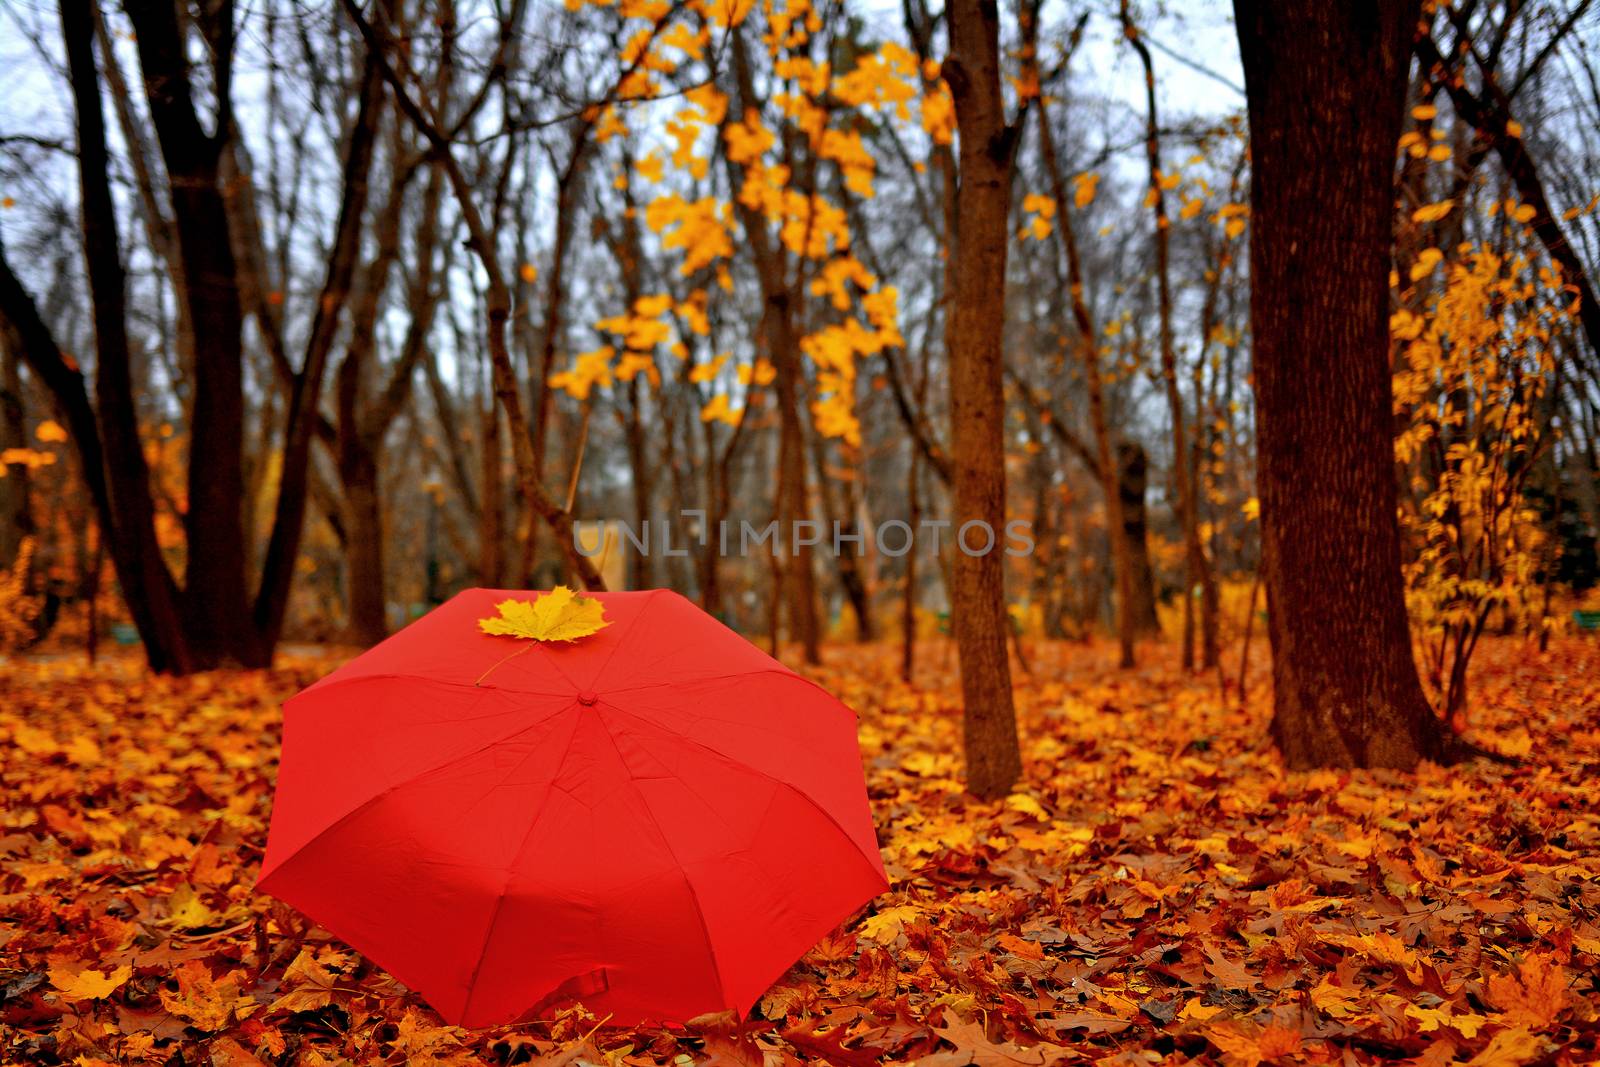 Autumn Umbrella by outchill